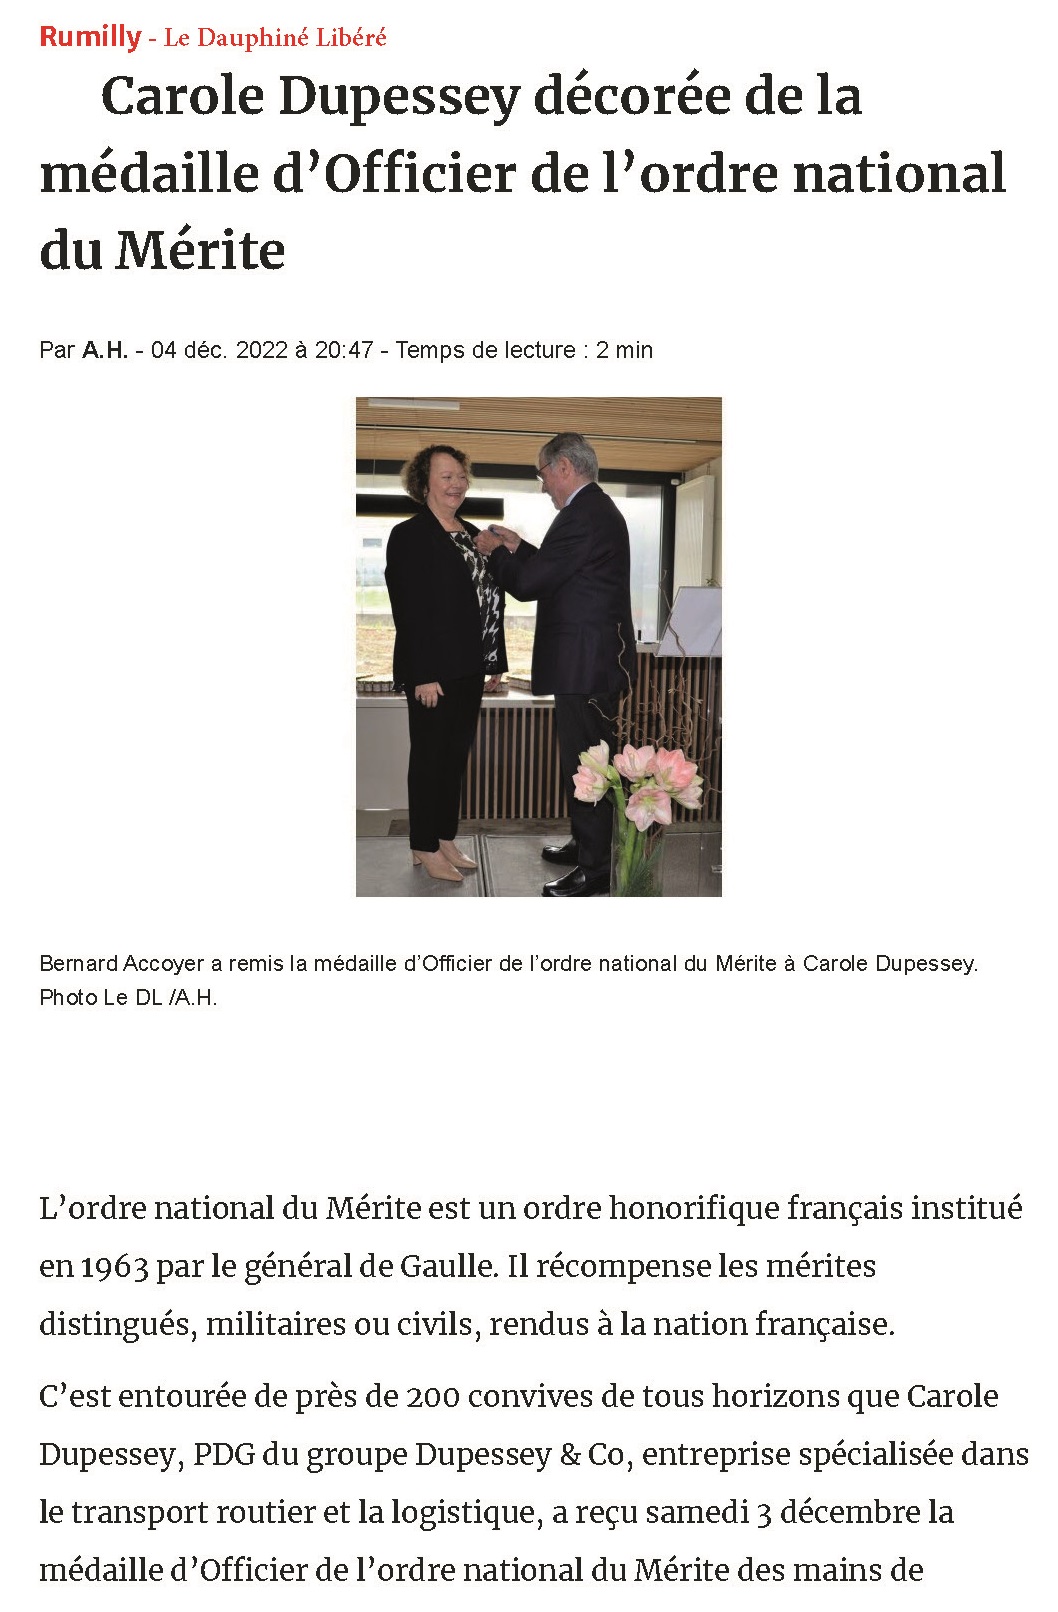 Remise de médaille de l'Ordre du Mérite - Carole Dupessey